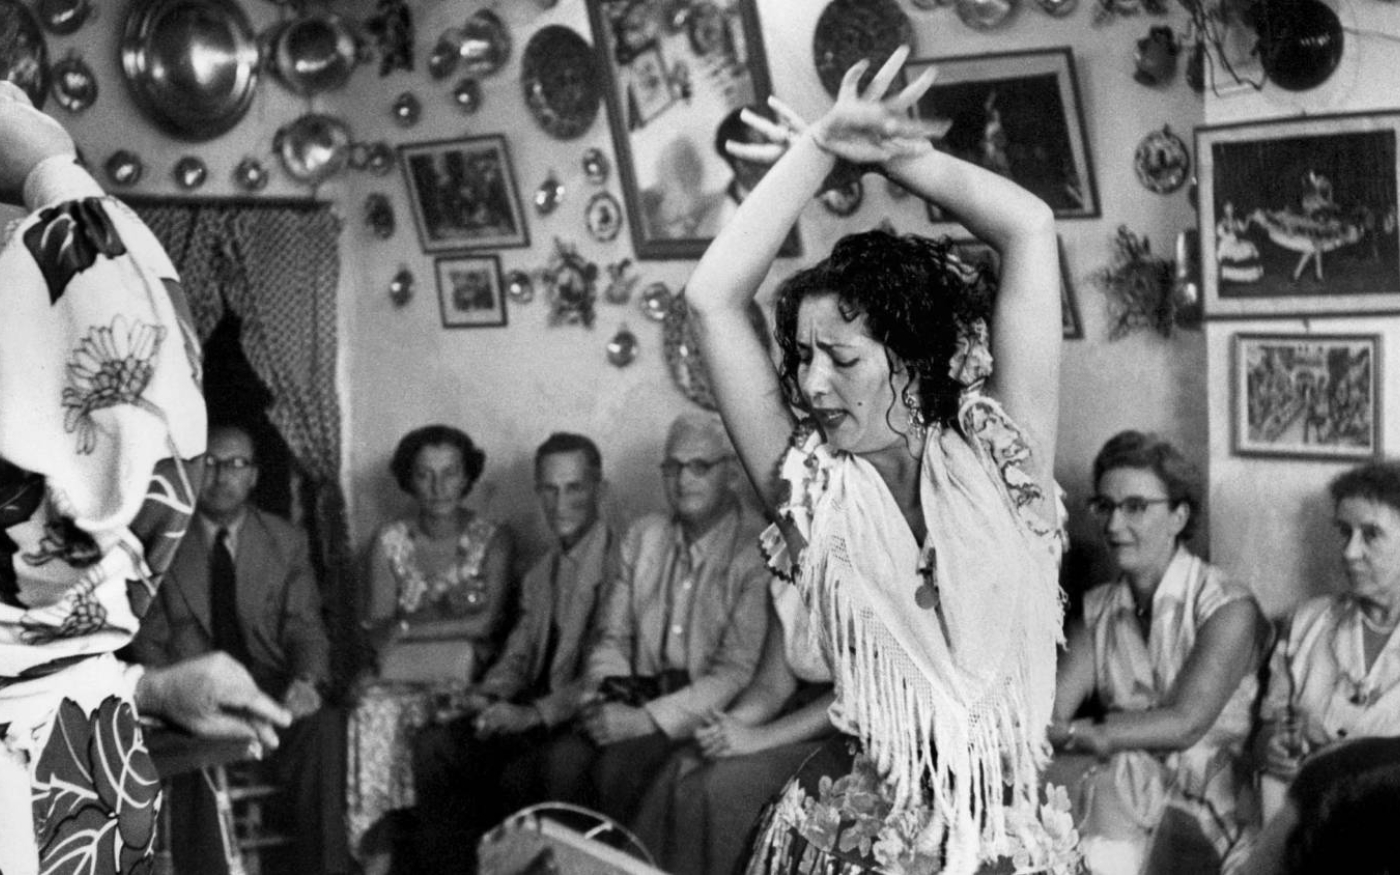 La danse flamenco s’est développée à partir de diverses traditions minoritaires après l’Inquisition (AFP)